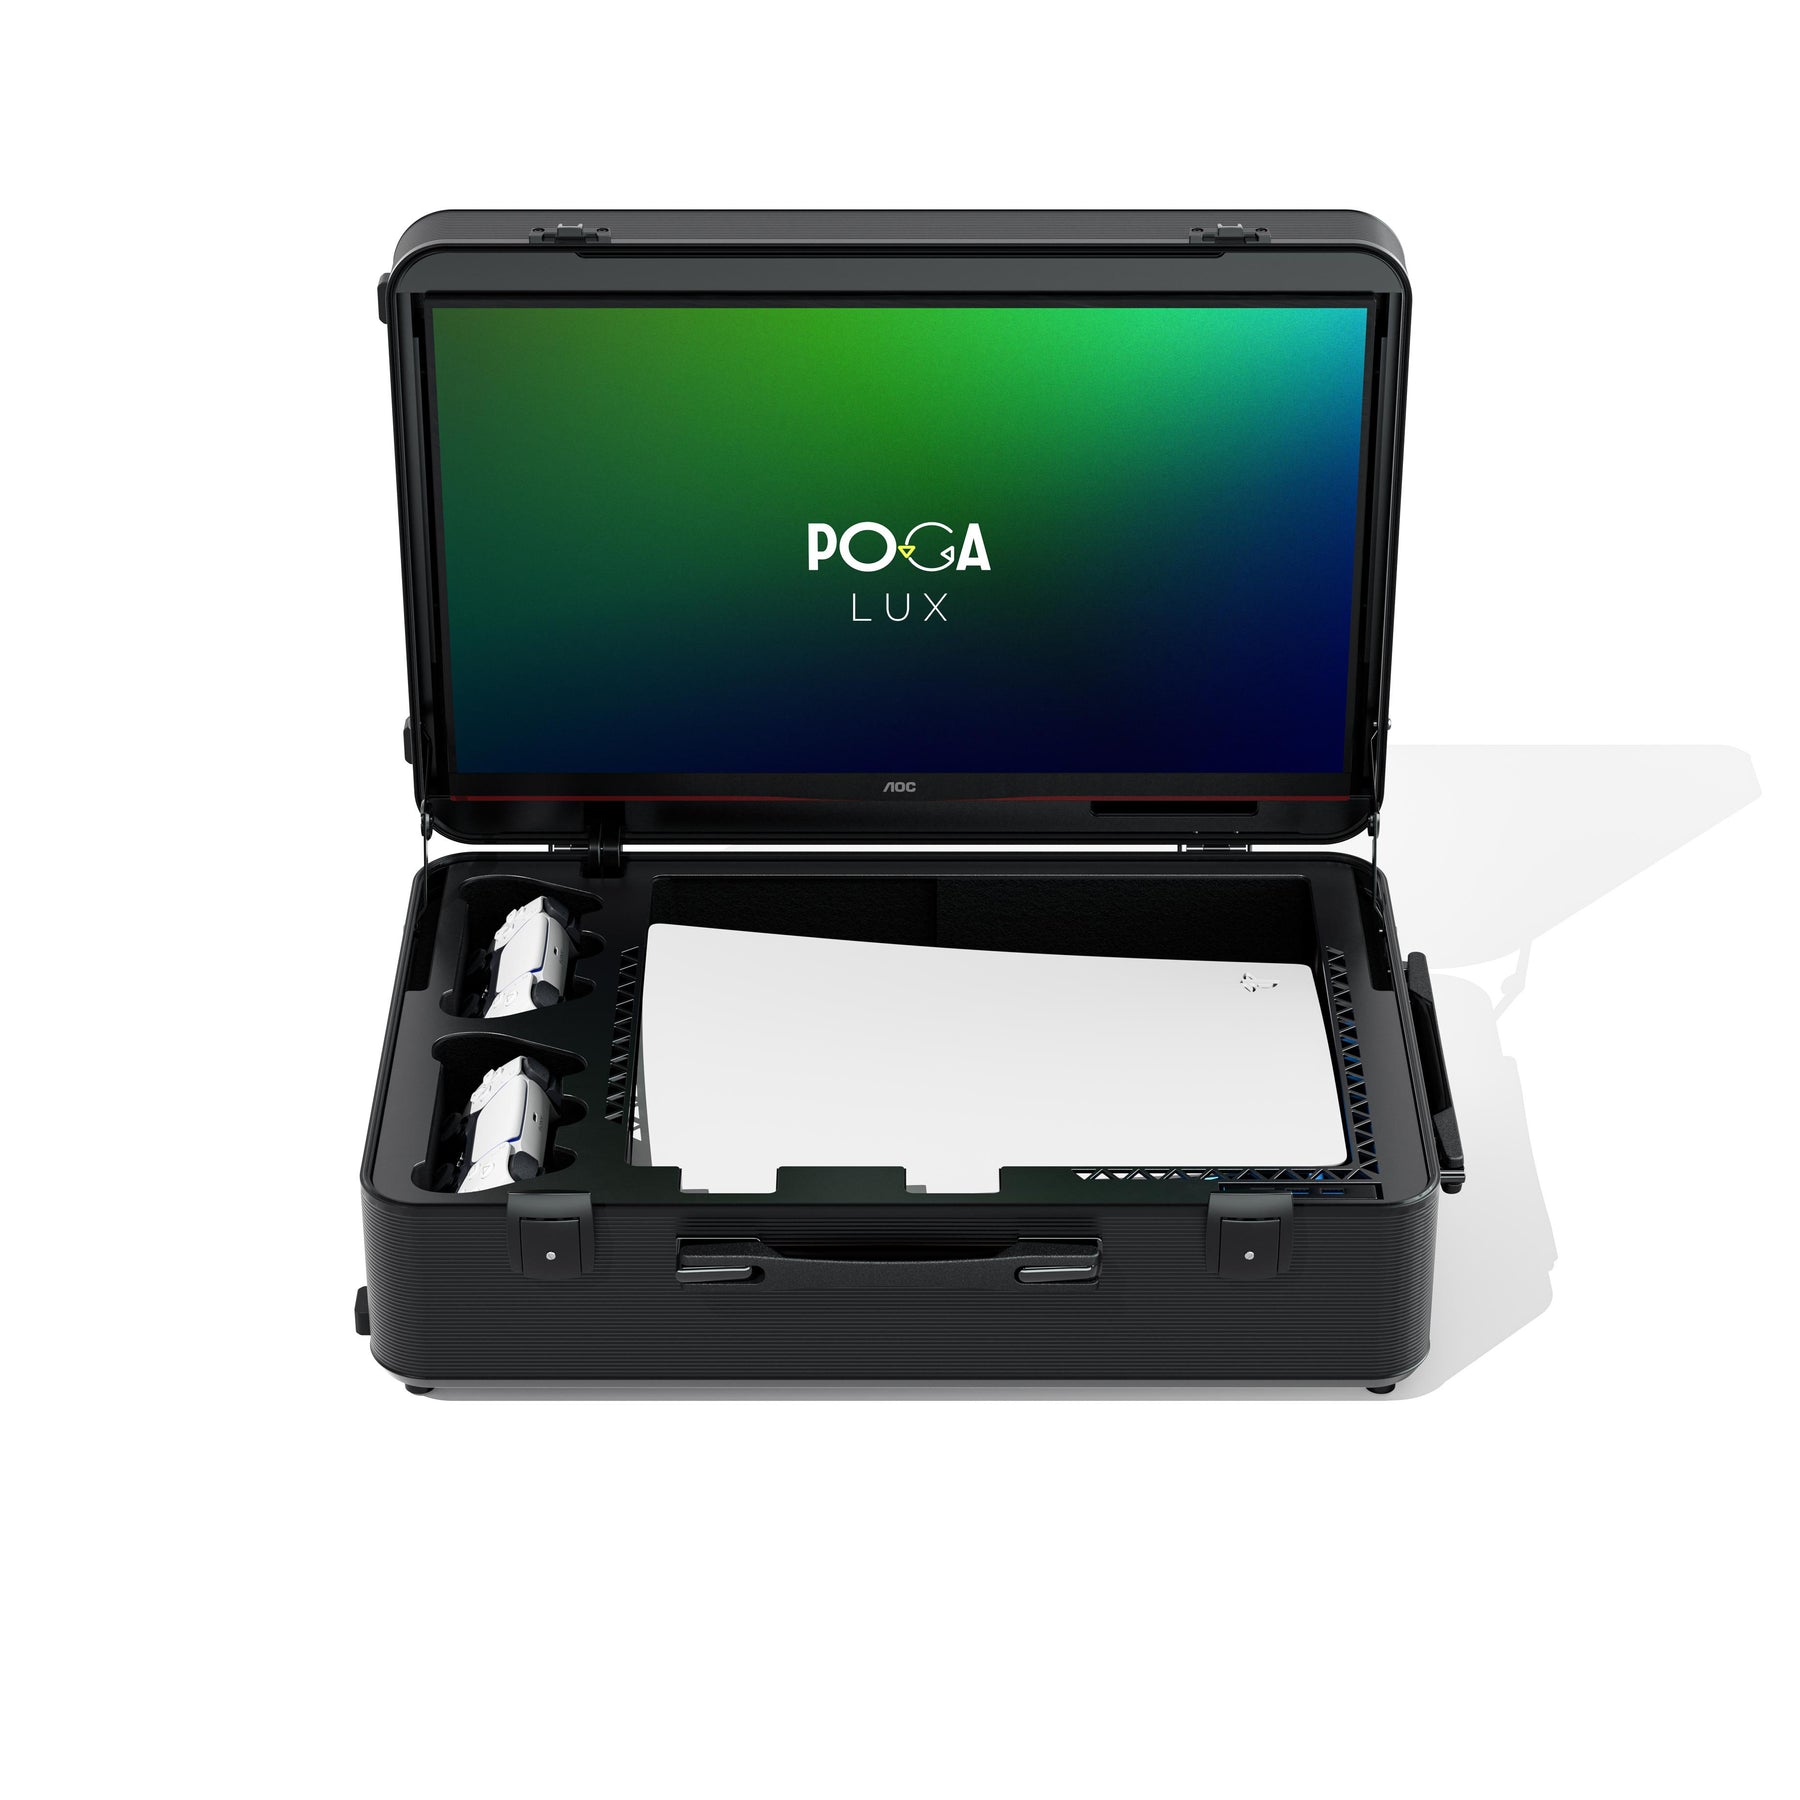 POGA Lux incl. PS5 Slim Console